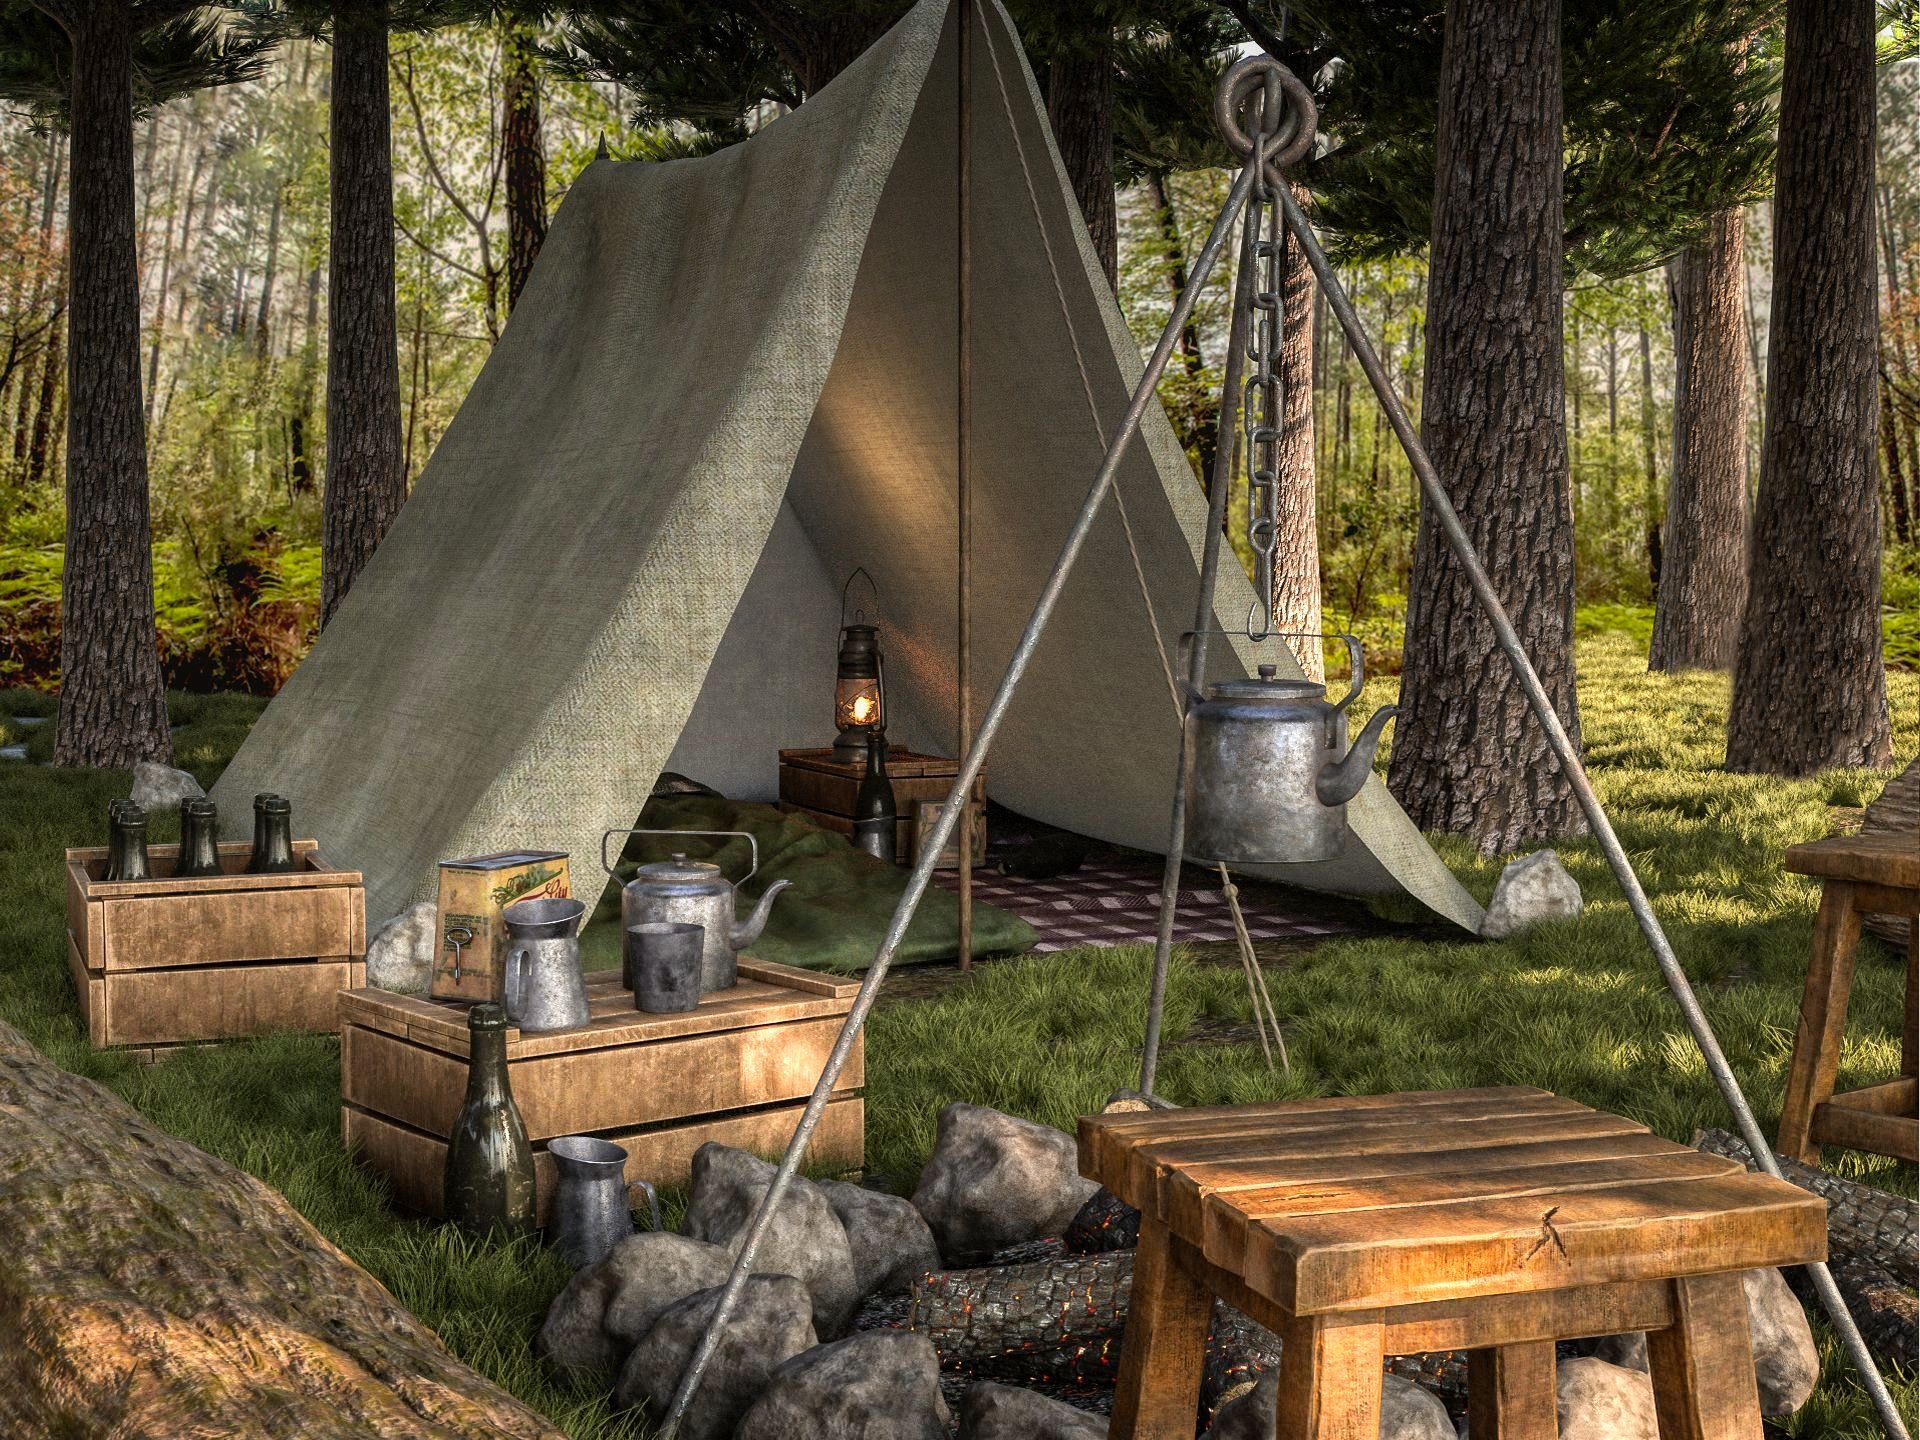 Camping site. Рыцарский шатер. Лагерь палатки в сасновом лесу у реки Кастер снаряжение. Кемпинг городок Северный ветер. Camping 3d.